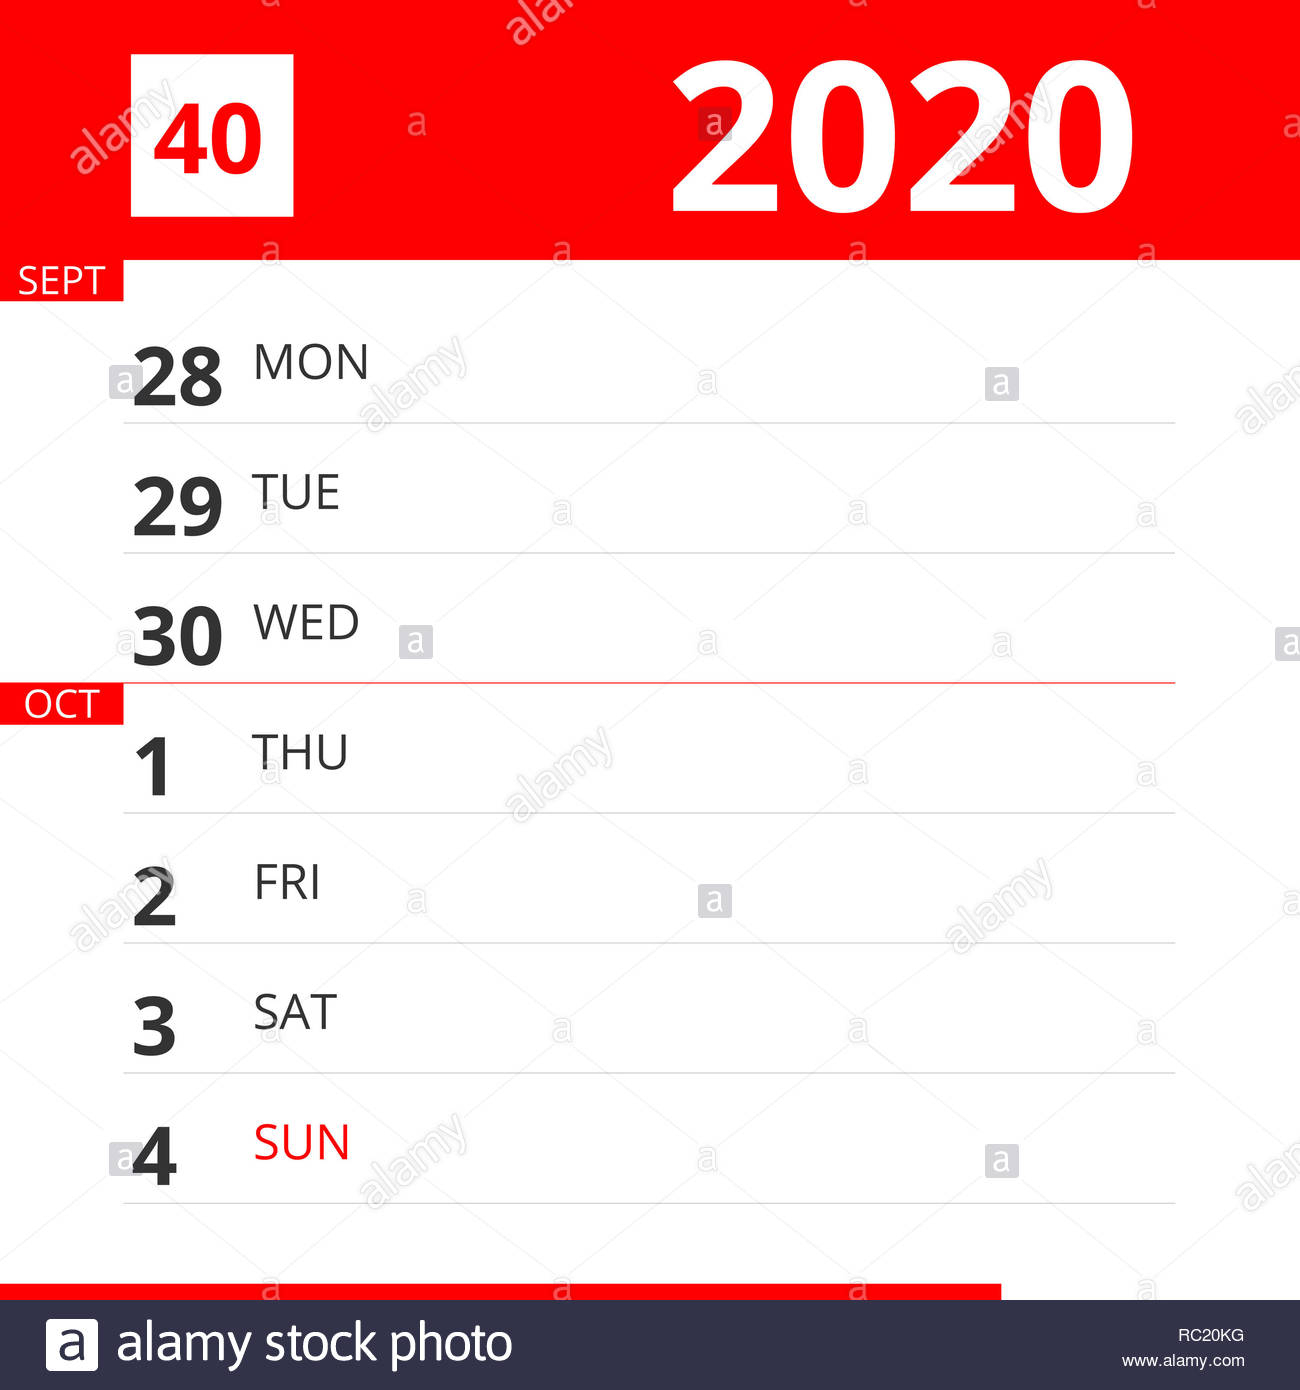 Calendar Planner For Week 40 In 2020, Ends October 4, 2020